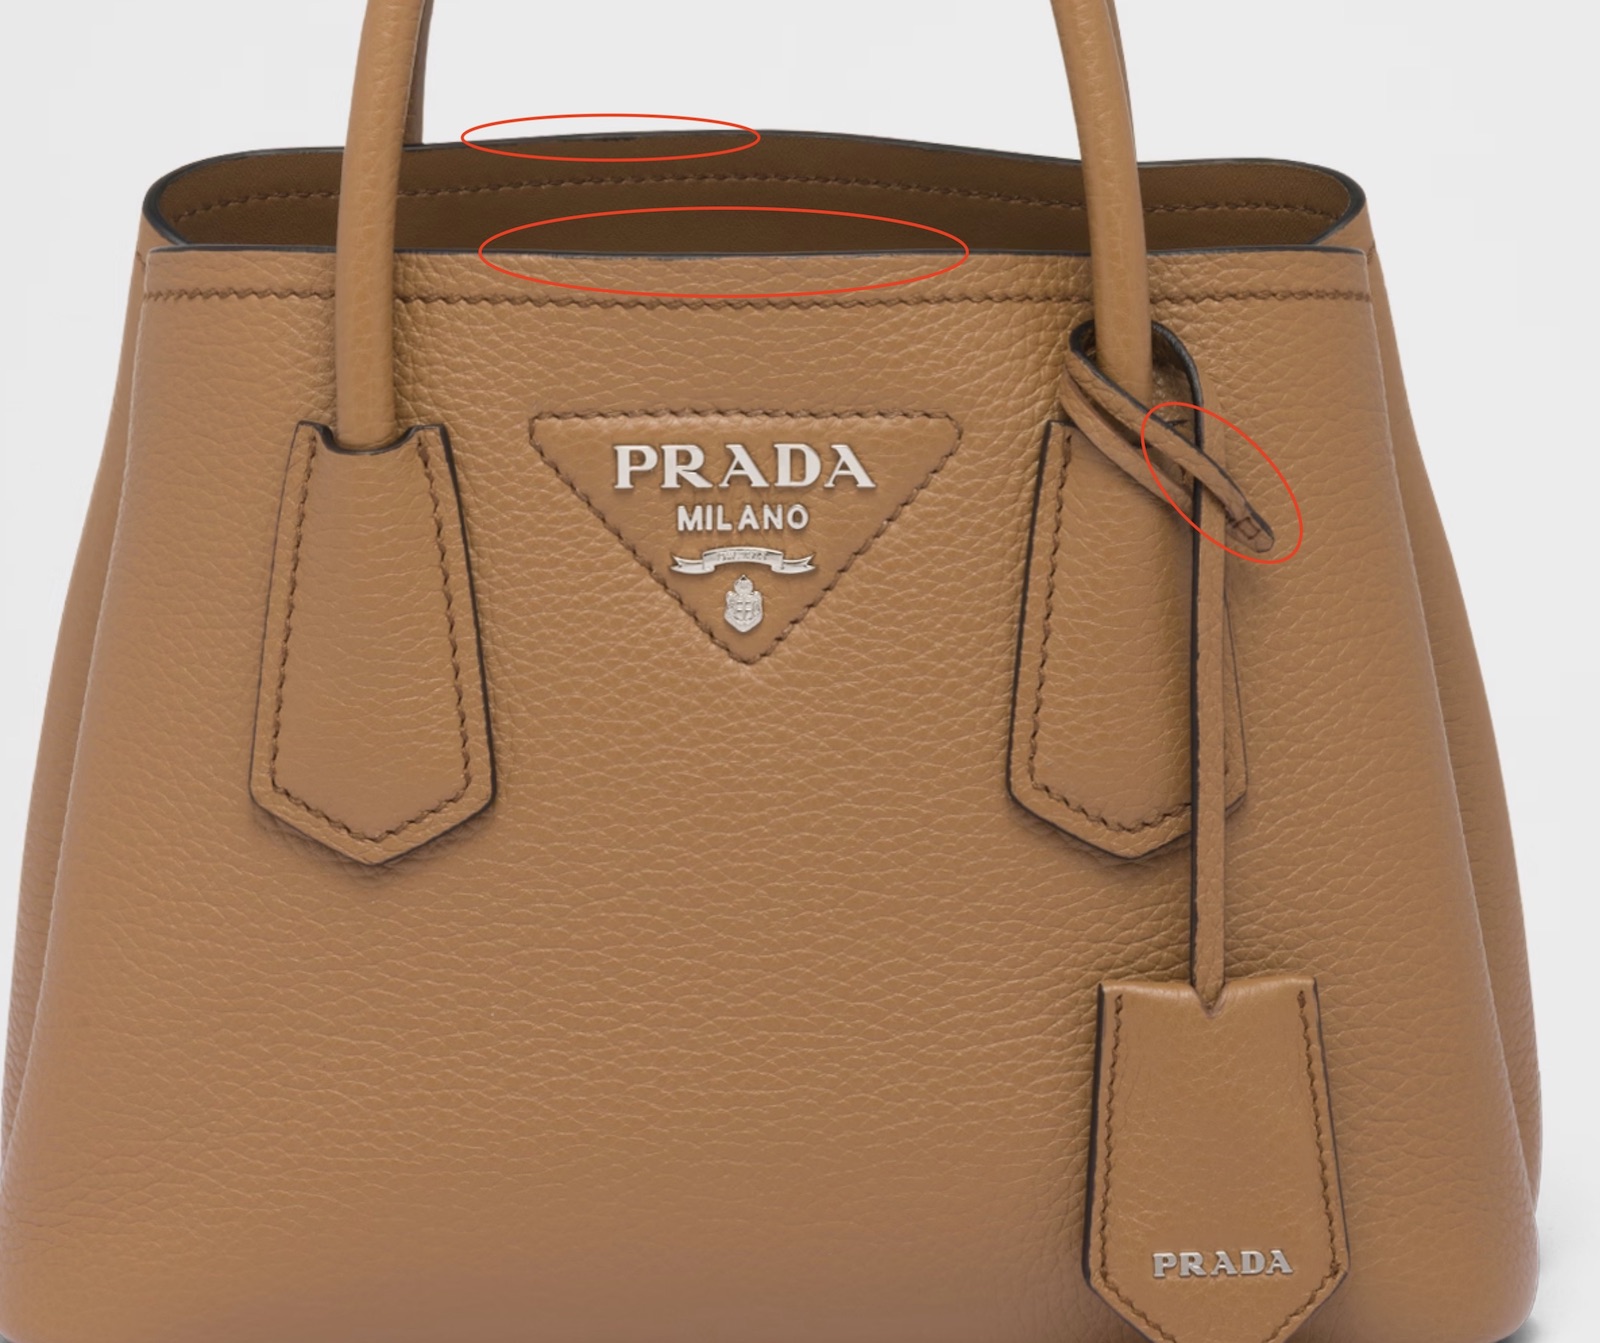 La plus grosse différence entre les industriels du luxe et les artisans réside dans l'attention aux détails... une notion vague chez beaucoup de marques comme l'illustre ce sac Prada. Fun fact, il s'agit du sac qui a été sélectionné pour le packshot... (Source: Prada)